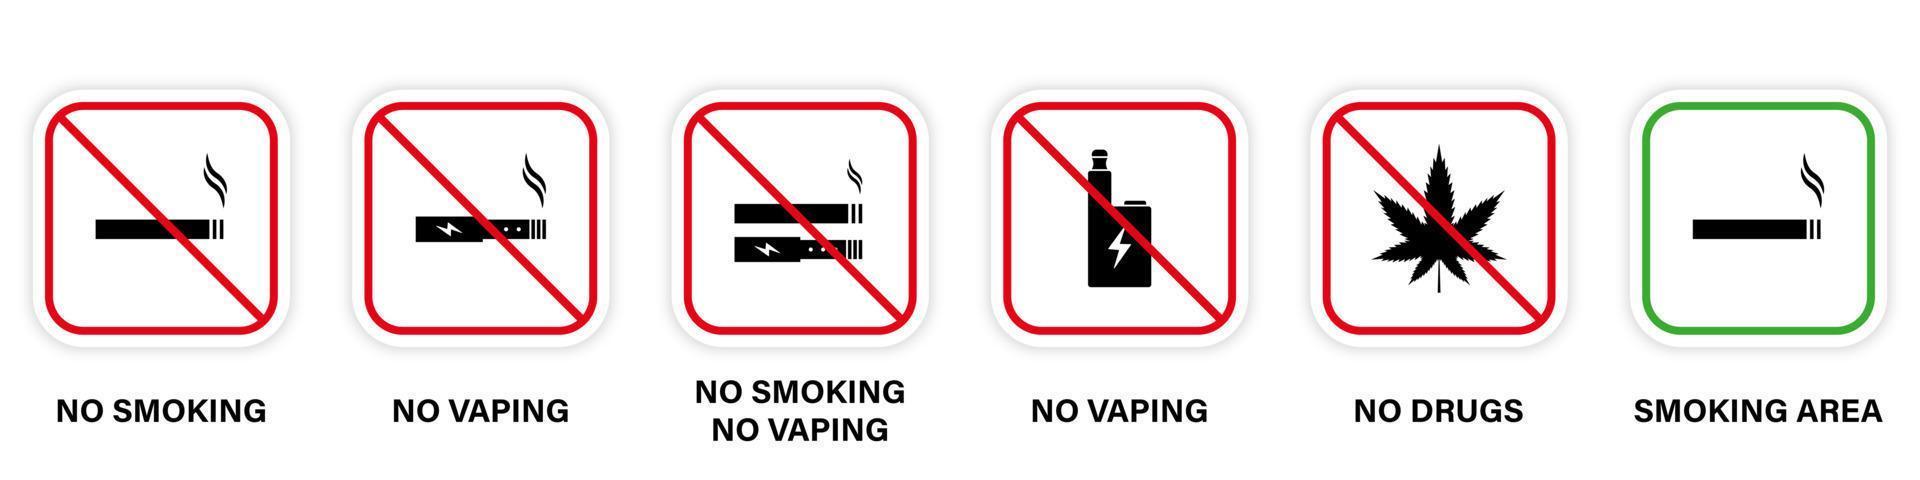 zona de prohibición fumar marihuana vape signo de cigarrillo. aviso permita el pictograma verde del área de humo. símbolo de parada roja prohibido fumar. conjunto de iconos de silueta de cannabis prohibido fumar. ilustración vectorial aislada. vector